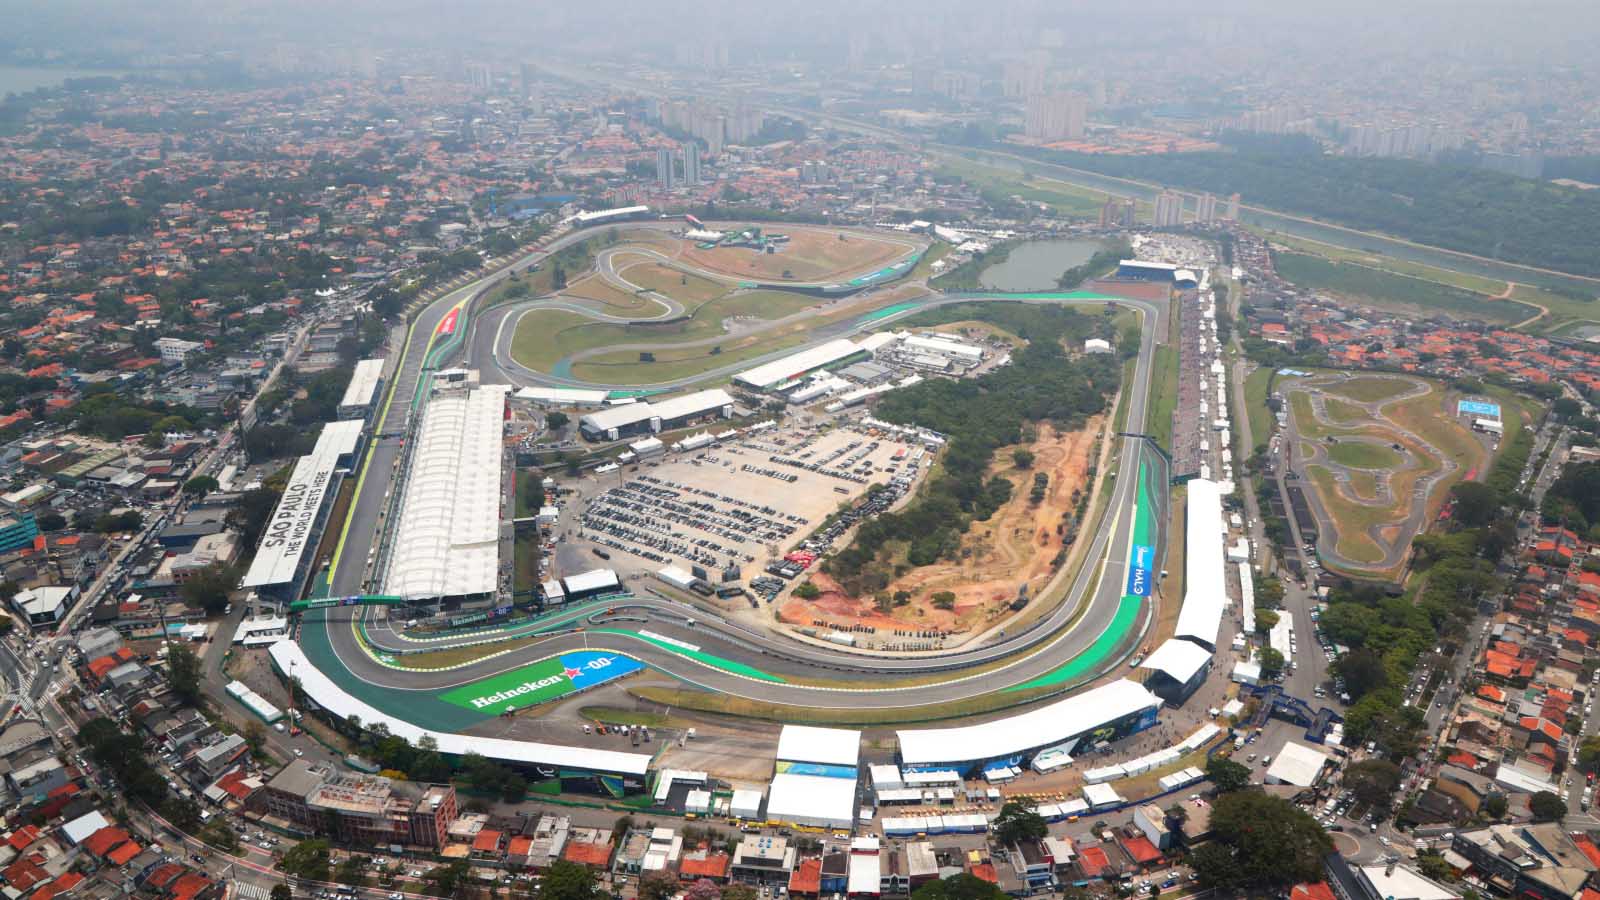 Sao Paulo Grand Prix: Preview